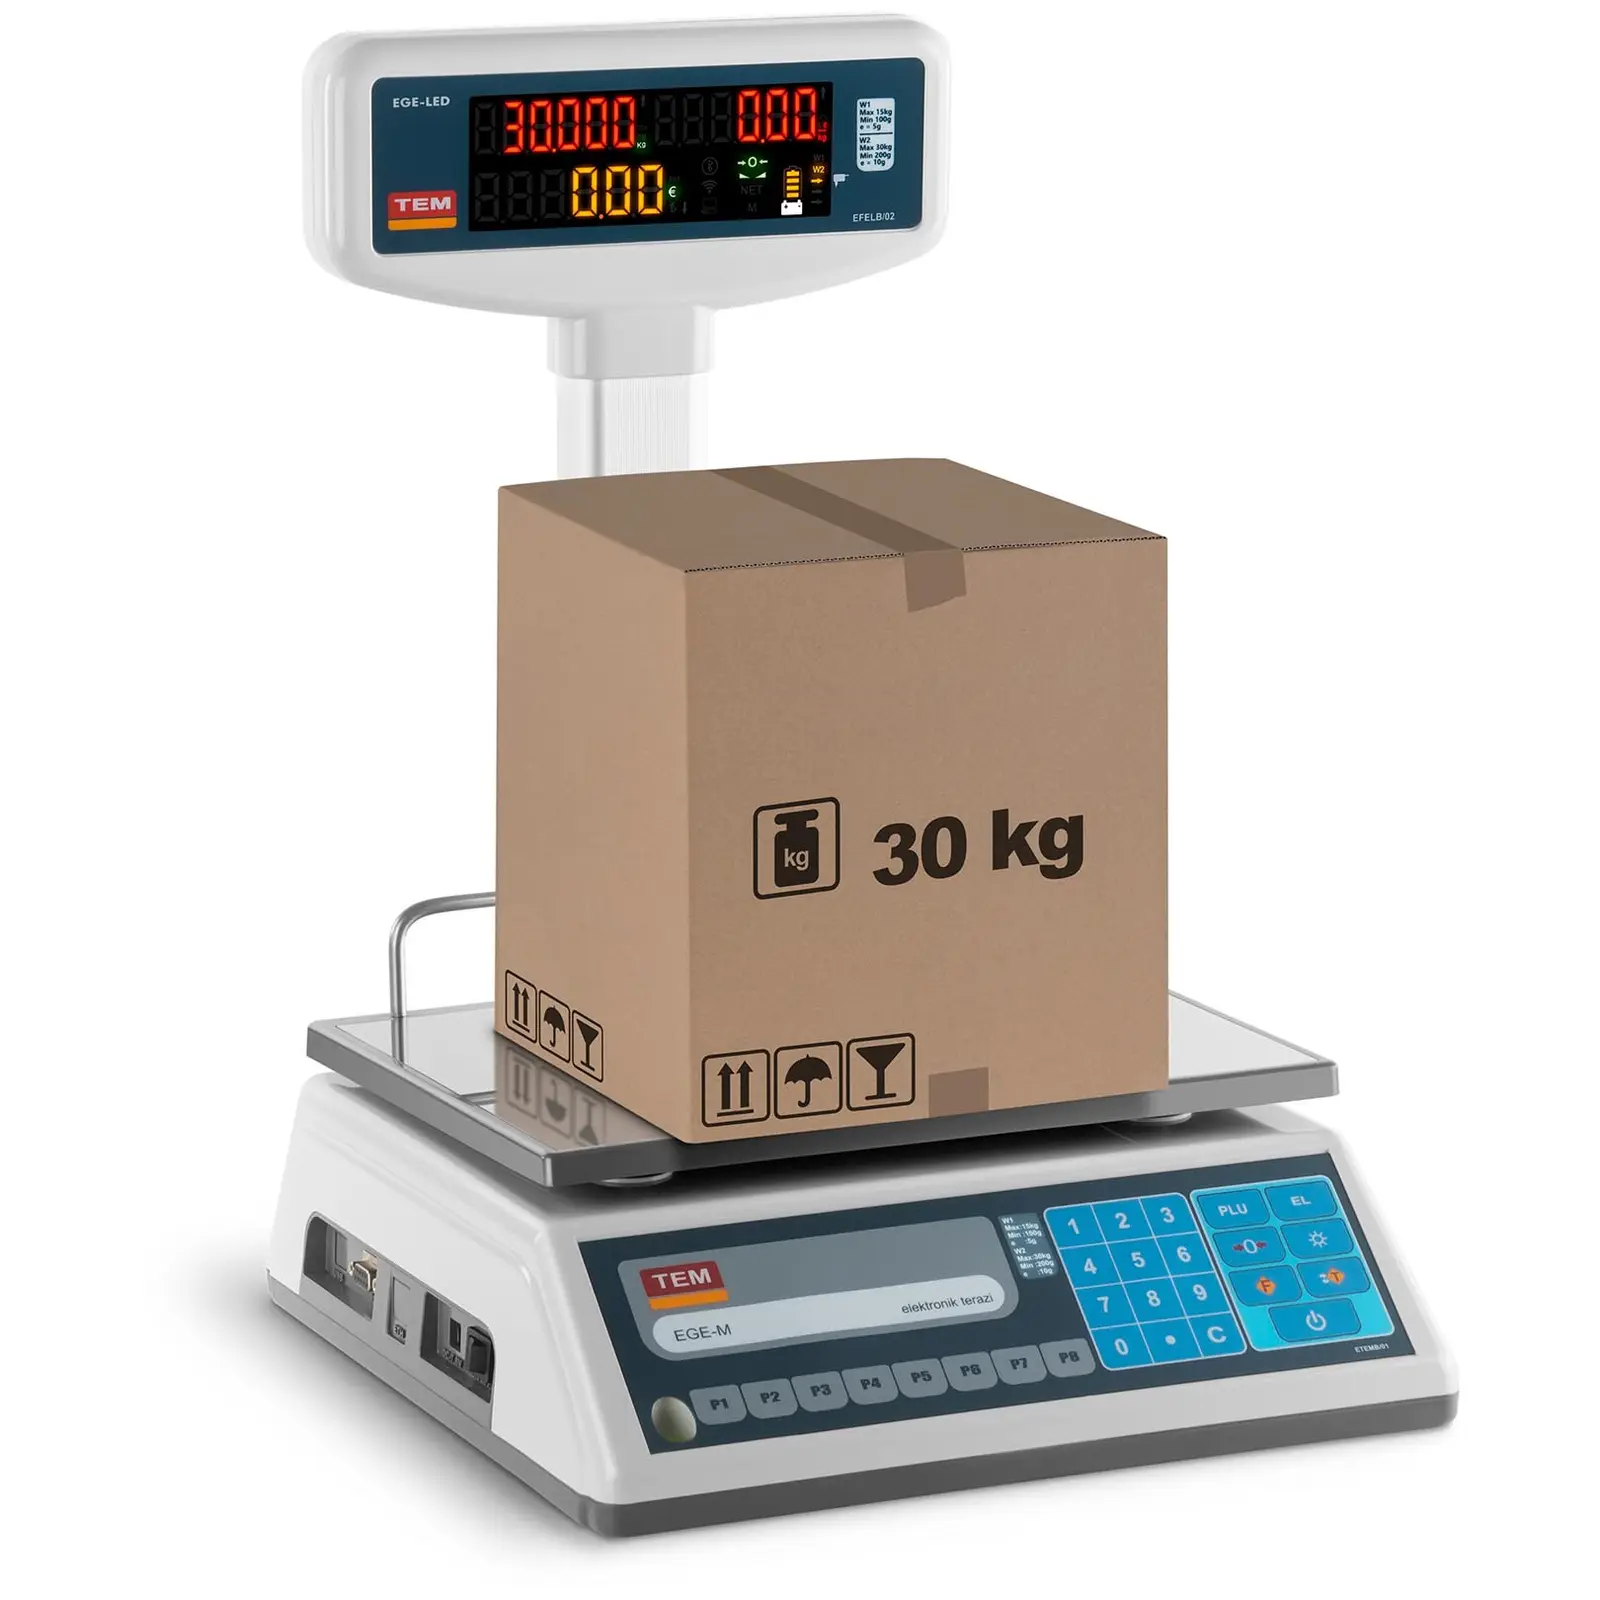 Obchodná váha - vysoký LED displej - ciachovaná - 15 kg/5 g - 30 kg/10 g